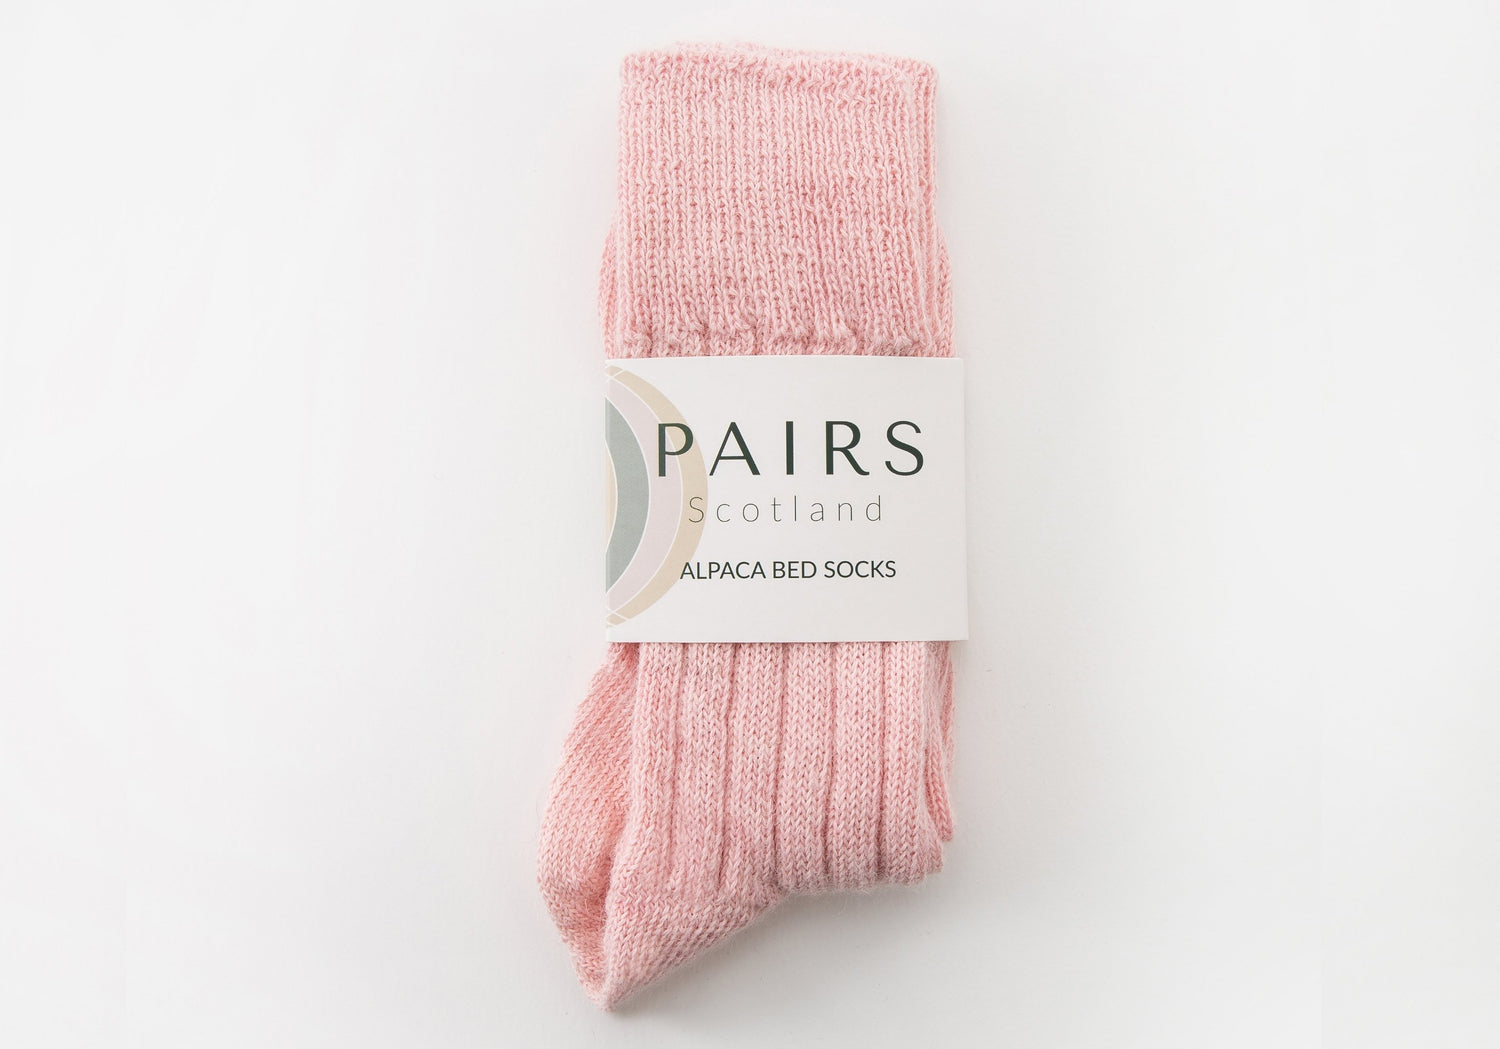 alpaca pink soft wool bed socks in brand packaging